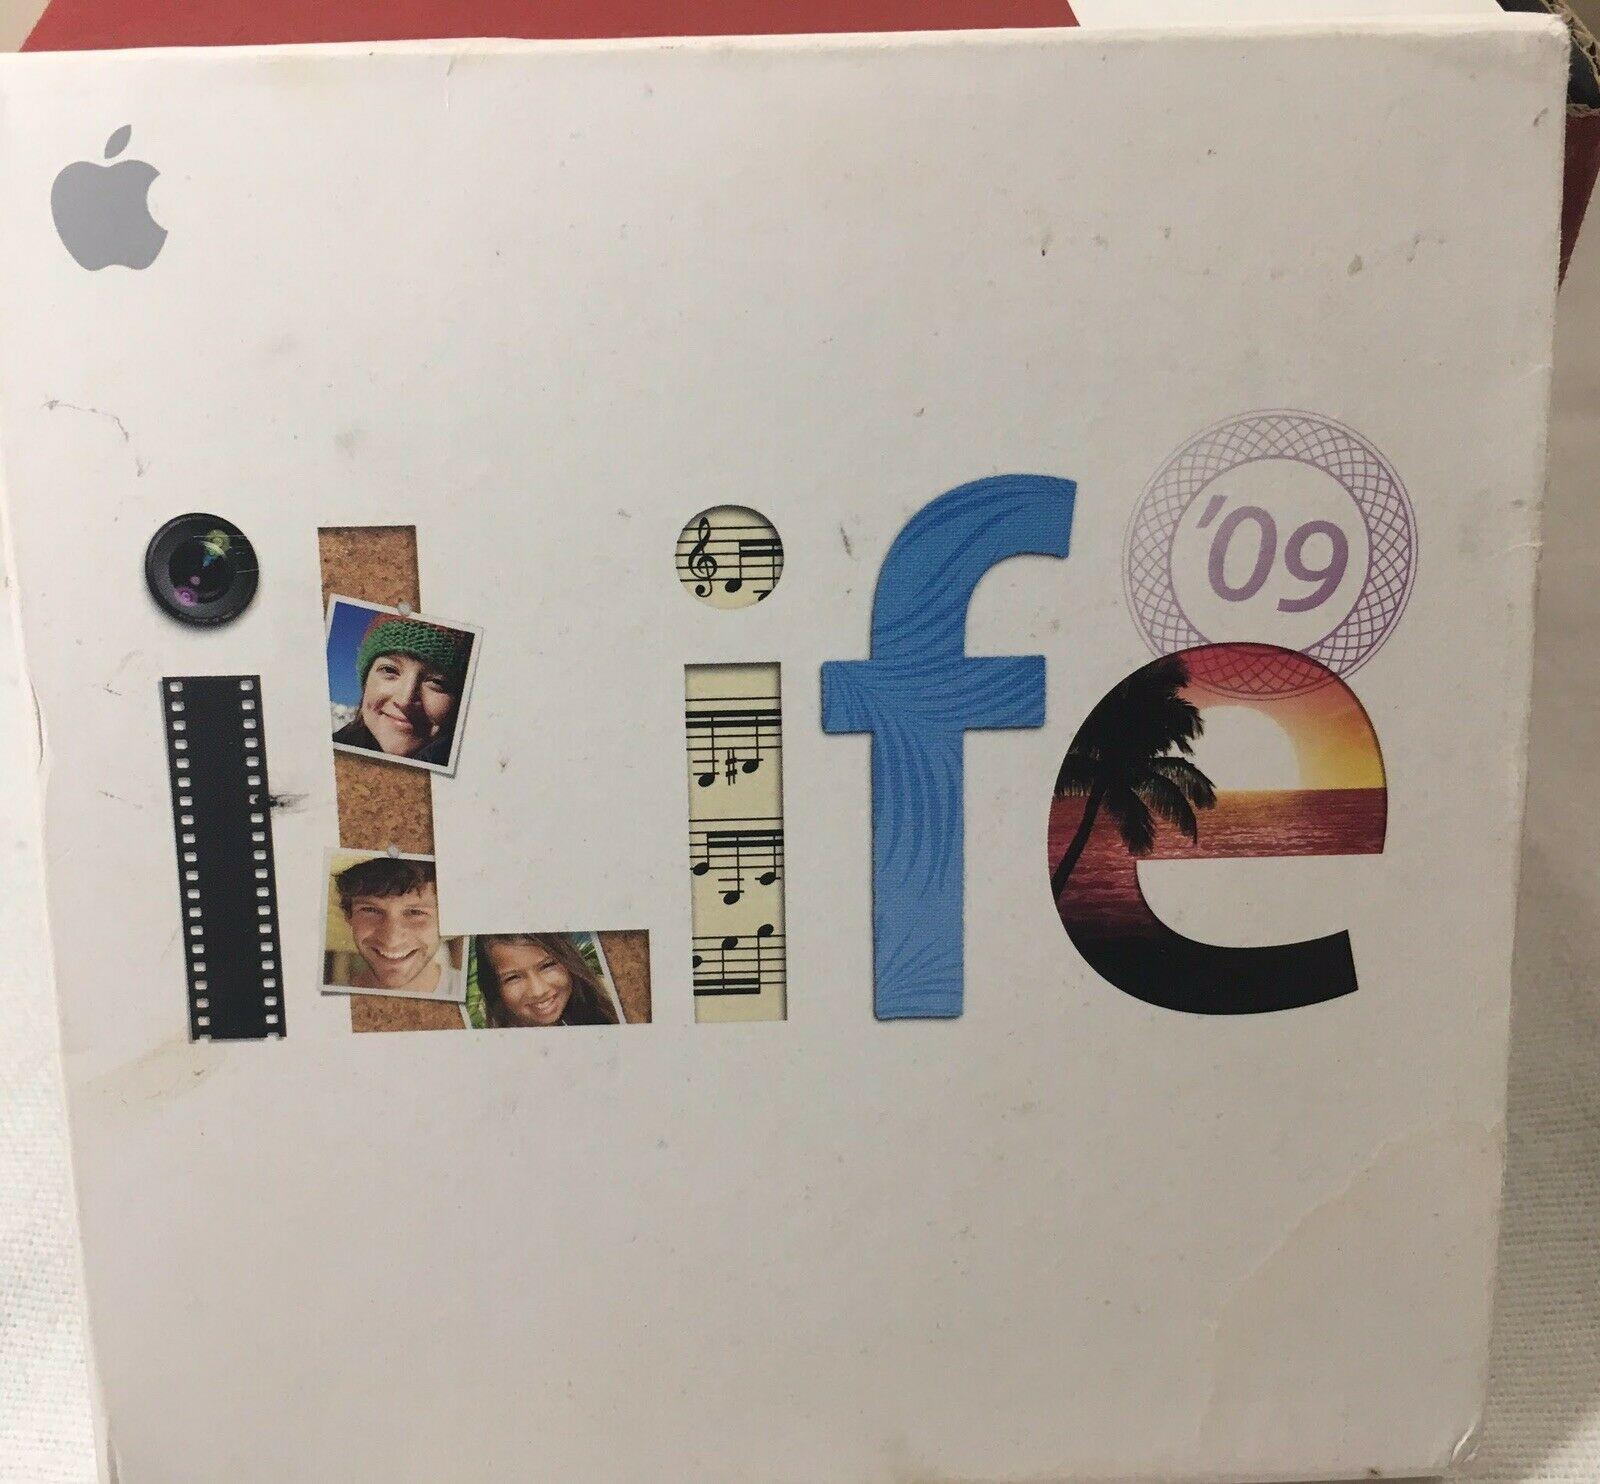 iLife Logo - Apple ILife 09 for Mac ILIFE09